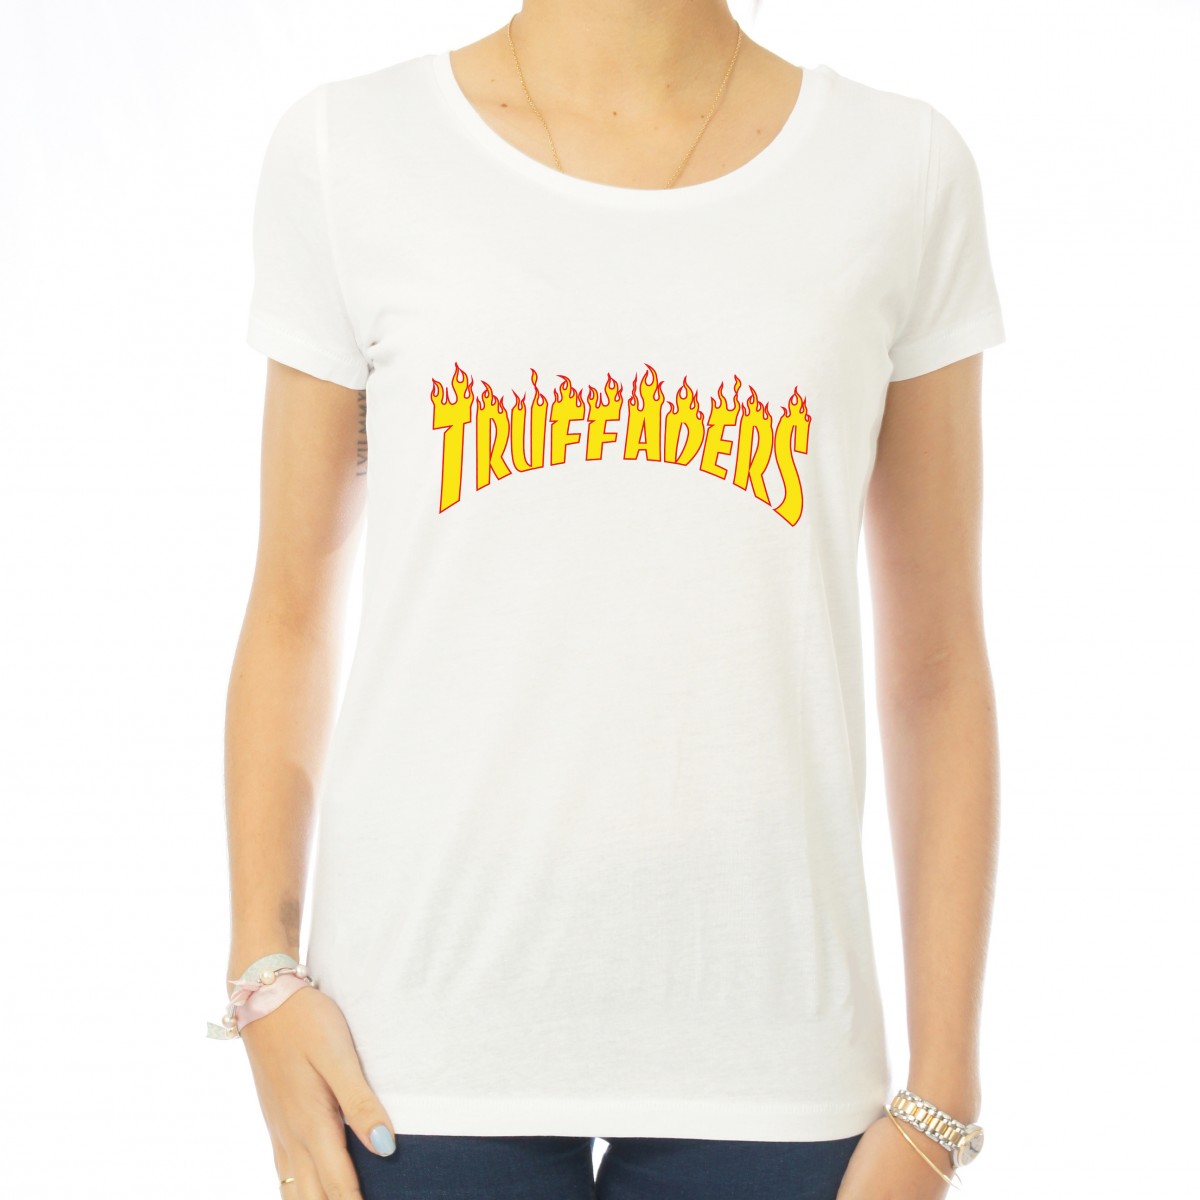 Saucisse Truffade - T-shirt femme Truffaders flammes jaunes